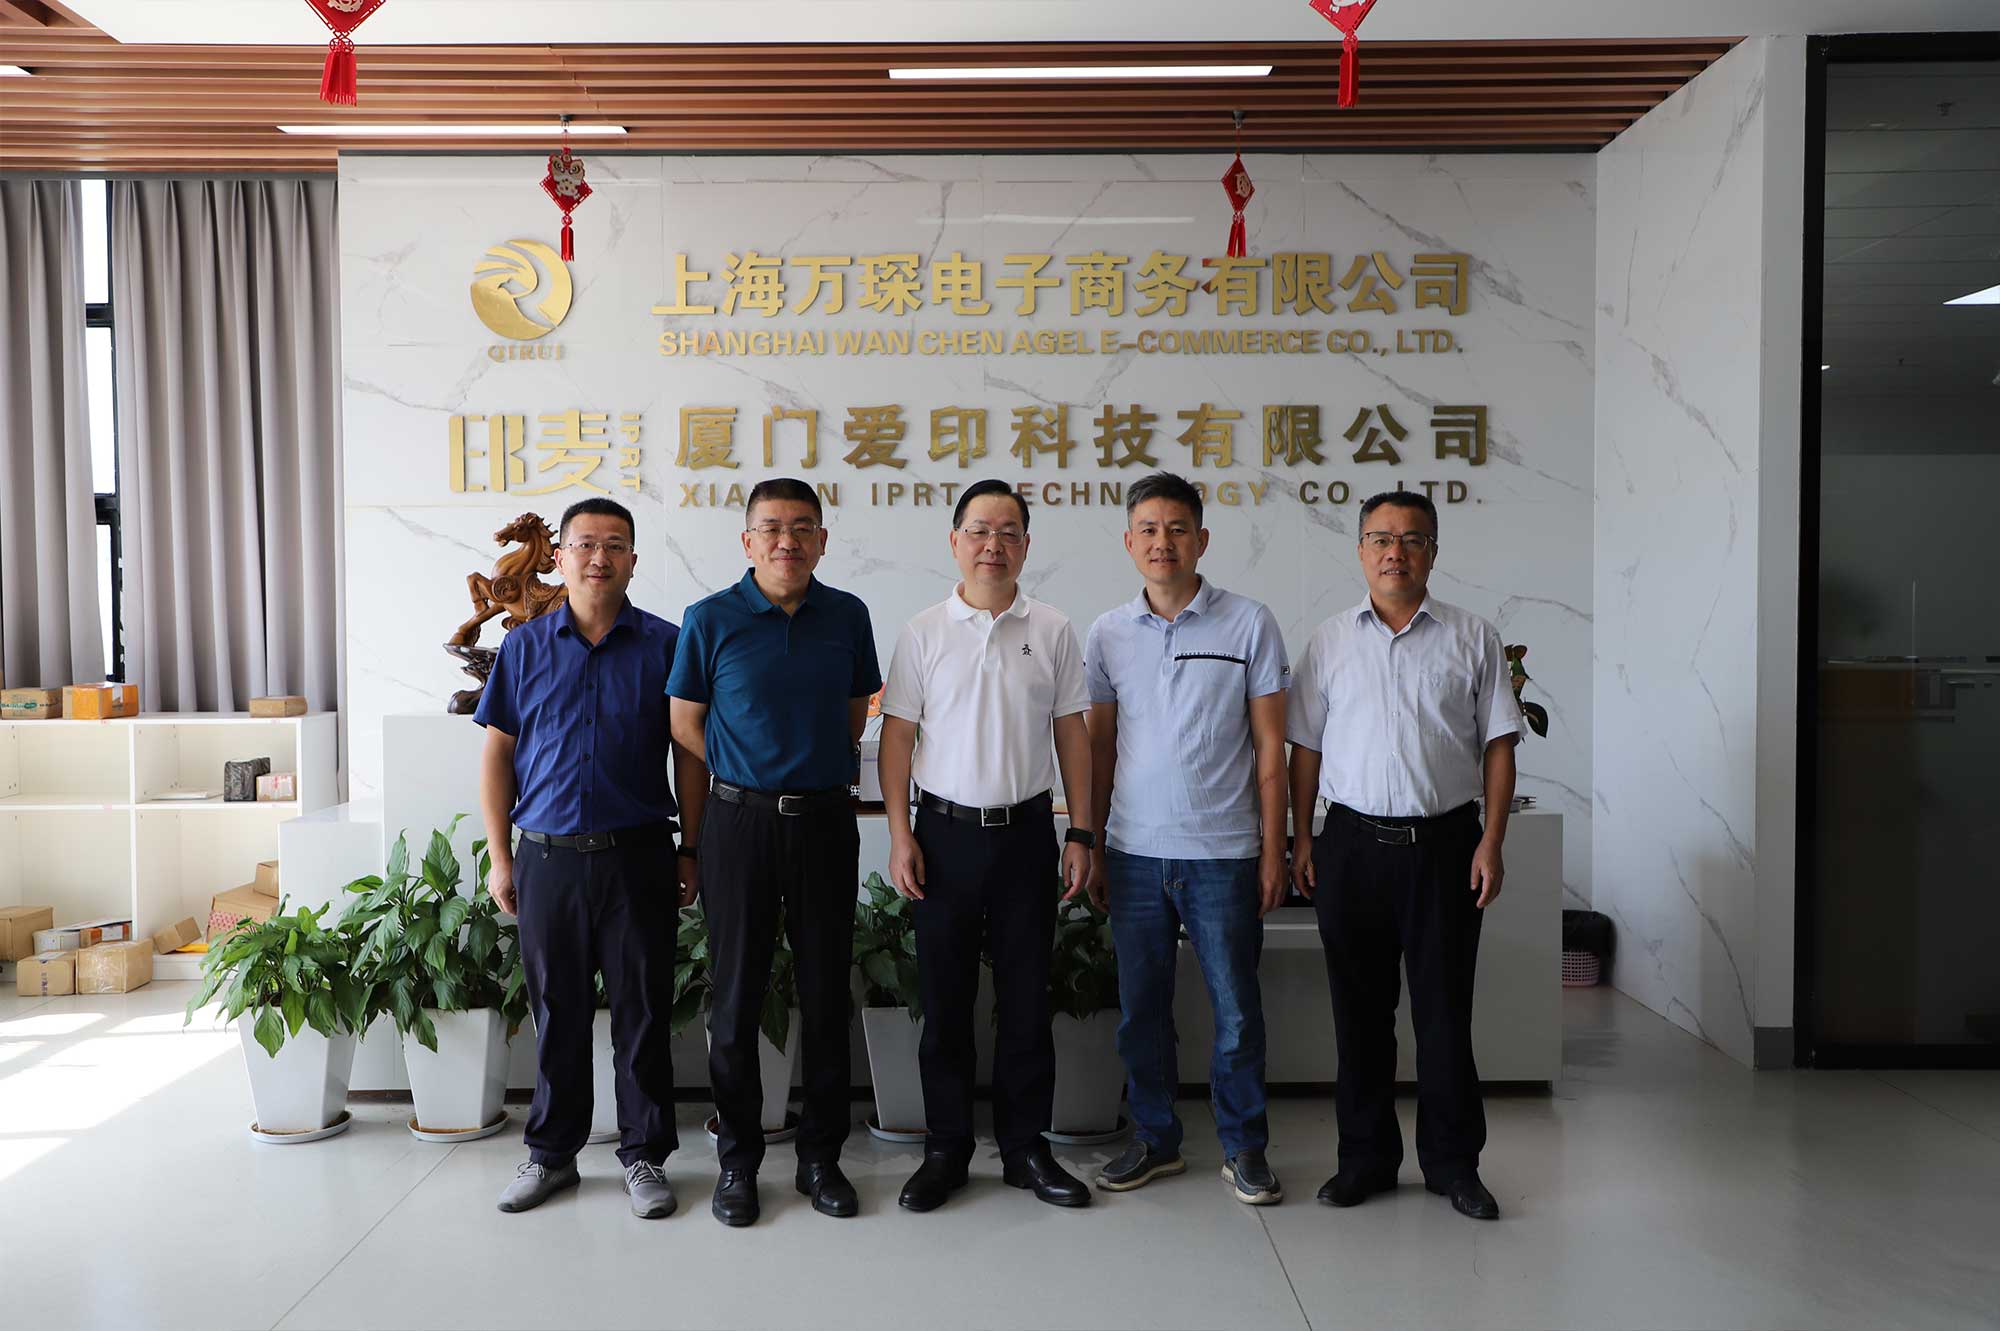 รองประธาน Xiamen CPPCC Li Qinhui และคนอื่นๆ เข้าเยี่ยมชม IPRT Technology เพื่อตรวจสอบและให้คำแนะนำ